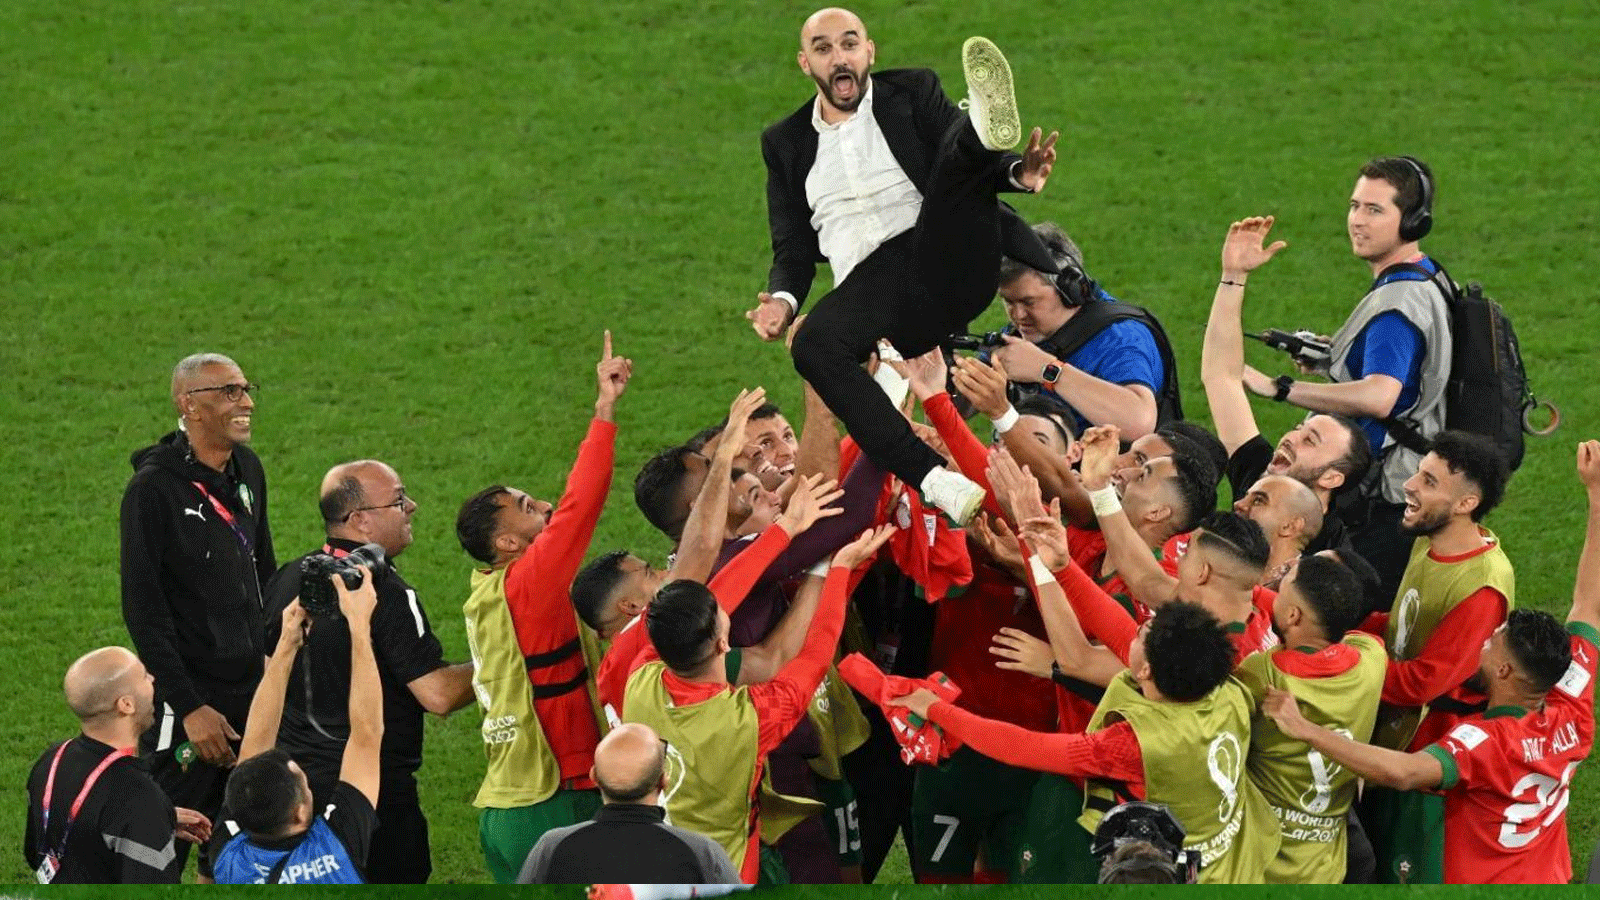 لاعبو المنتخب المغربلاعبو المنتخب المغربي يرمون المدرب وليد الركراكي في الهواء أثناء احتفالهم بالفوز على إسبانيا في مونديال قطر 2022ي لحظة الصافرة النهائية للمباراة ضد اسبانيا في ثمن نهائي كأس العالم في قطر في السادس من كانون الاول/ديسمبر 2022.